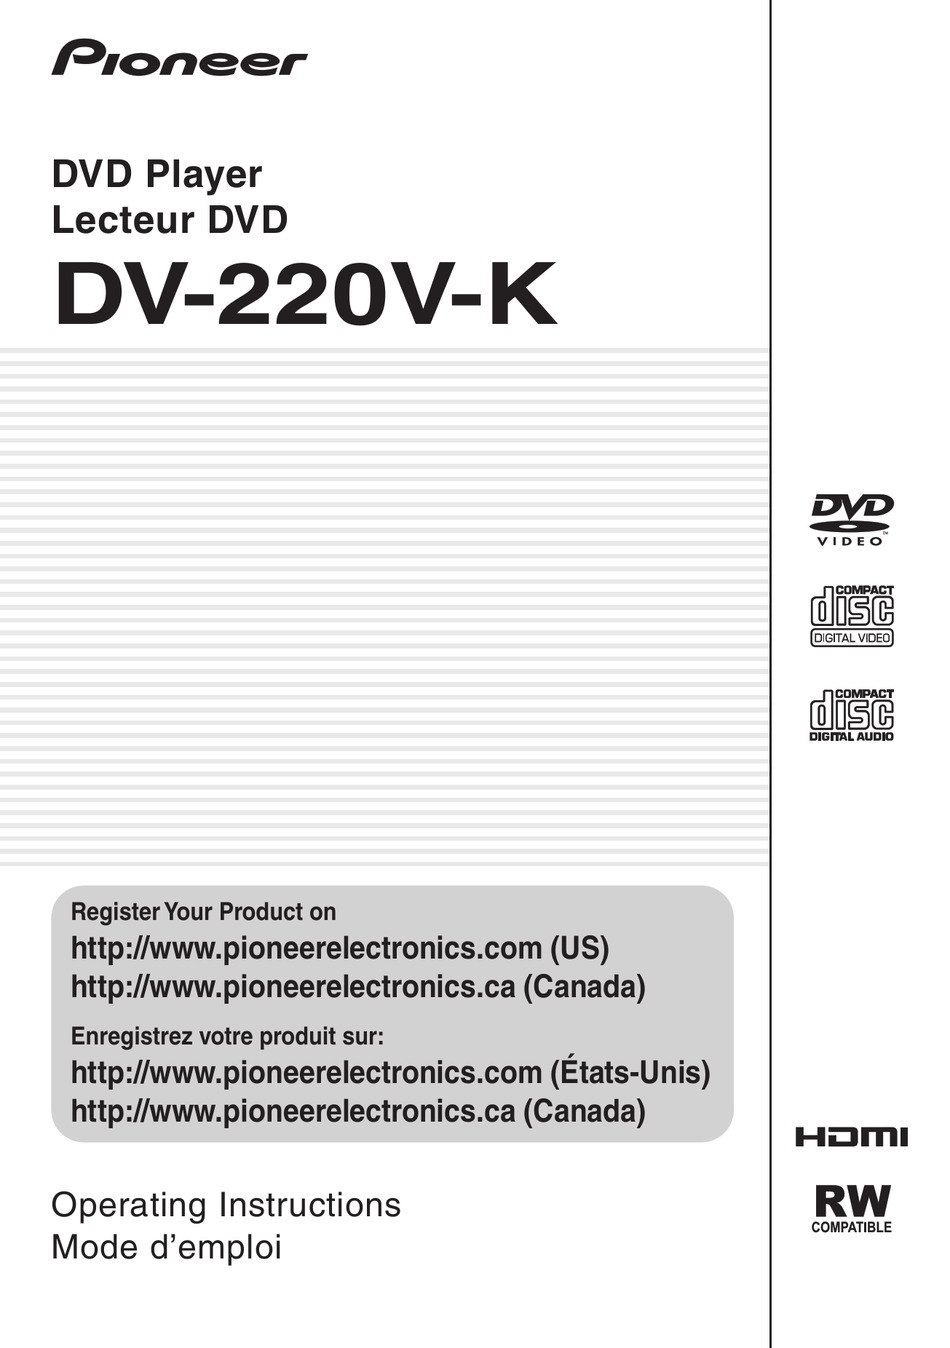 PIONEER DV-220V-K OPERATING INSTRUCTIONS MANUAL Pdf Download | ManualsLib